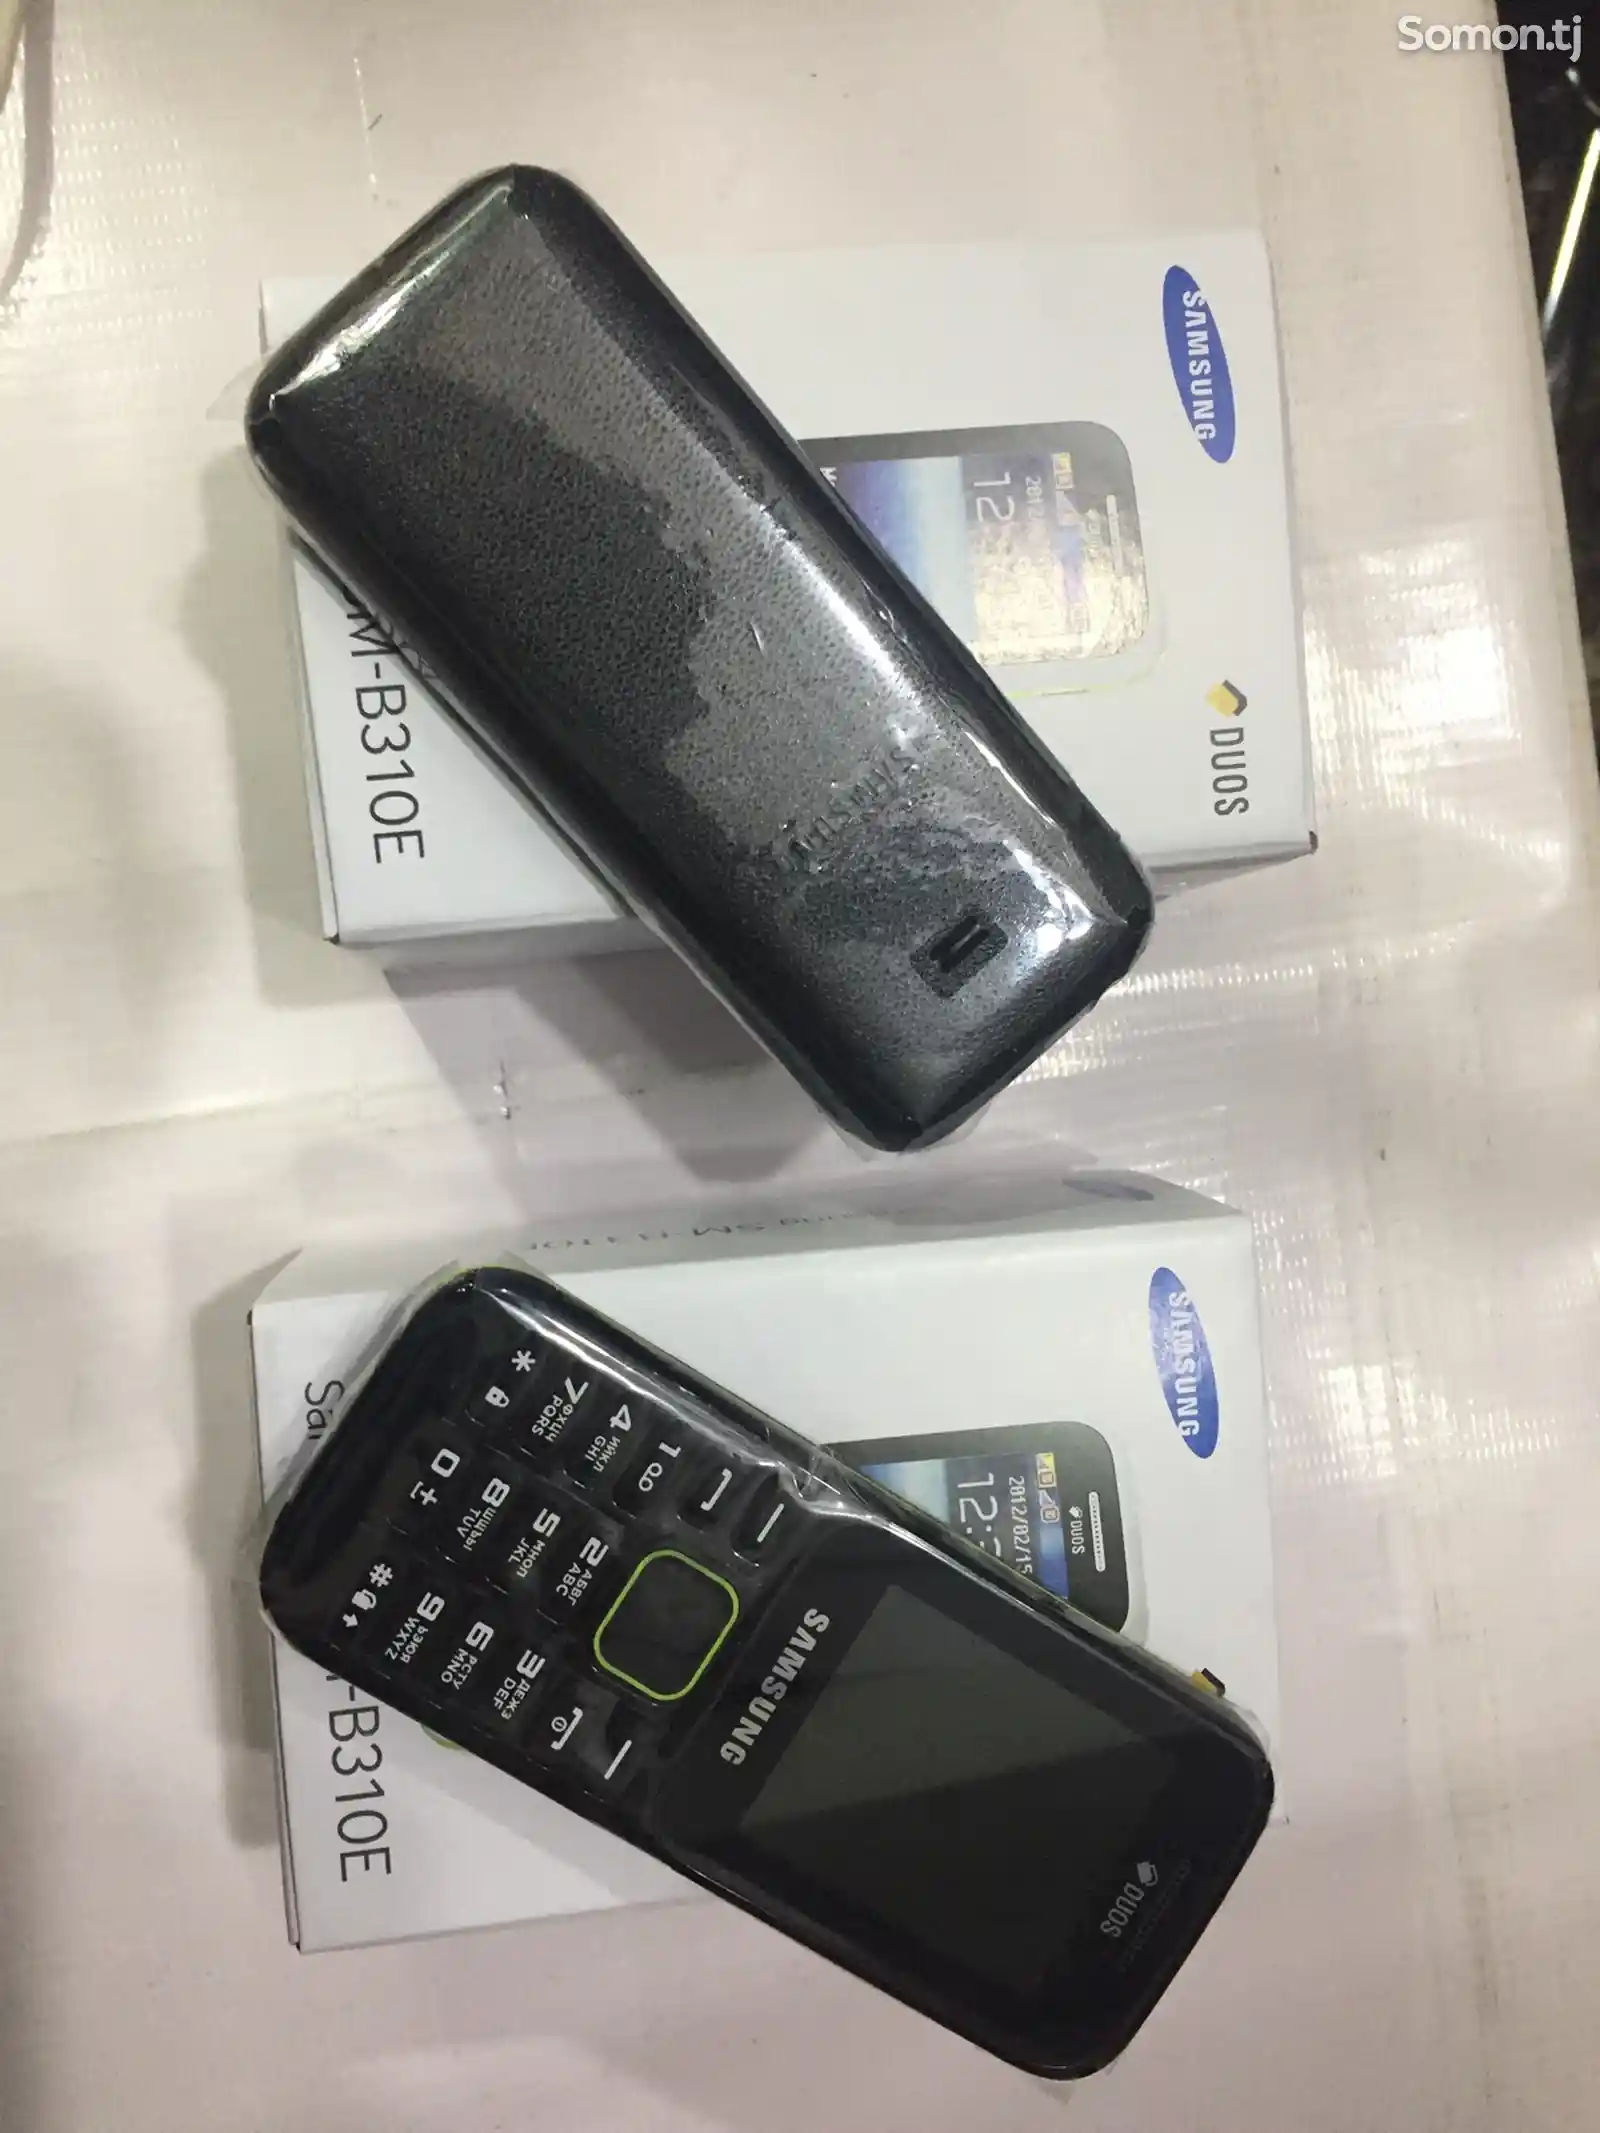 Samsung B310-2